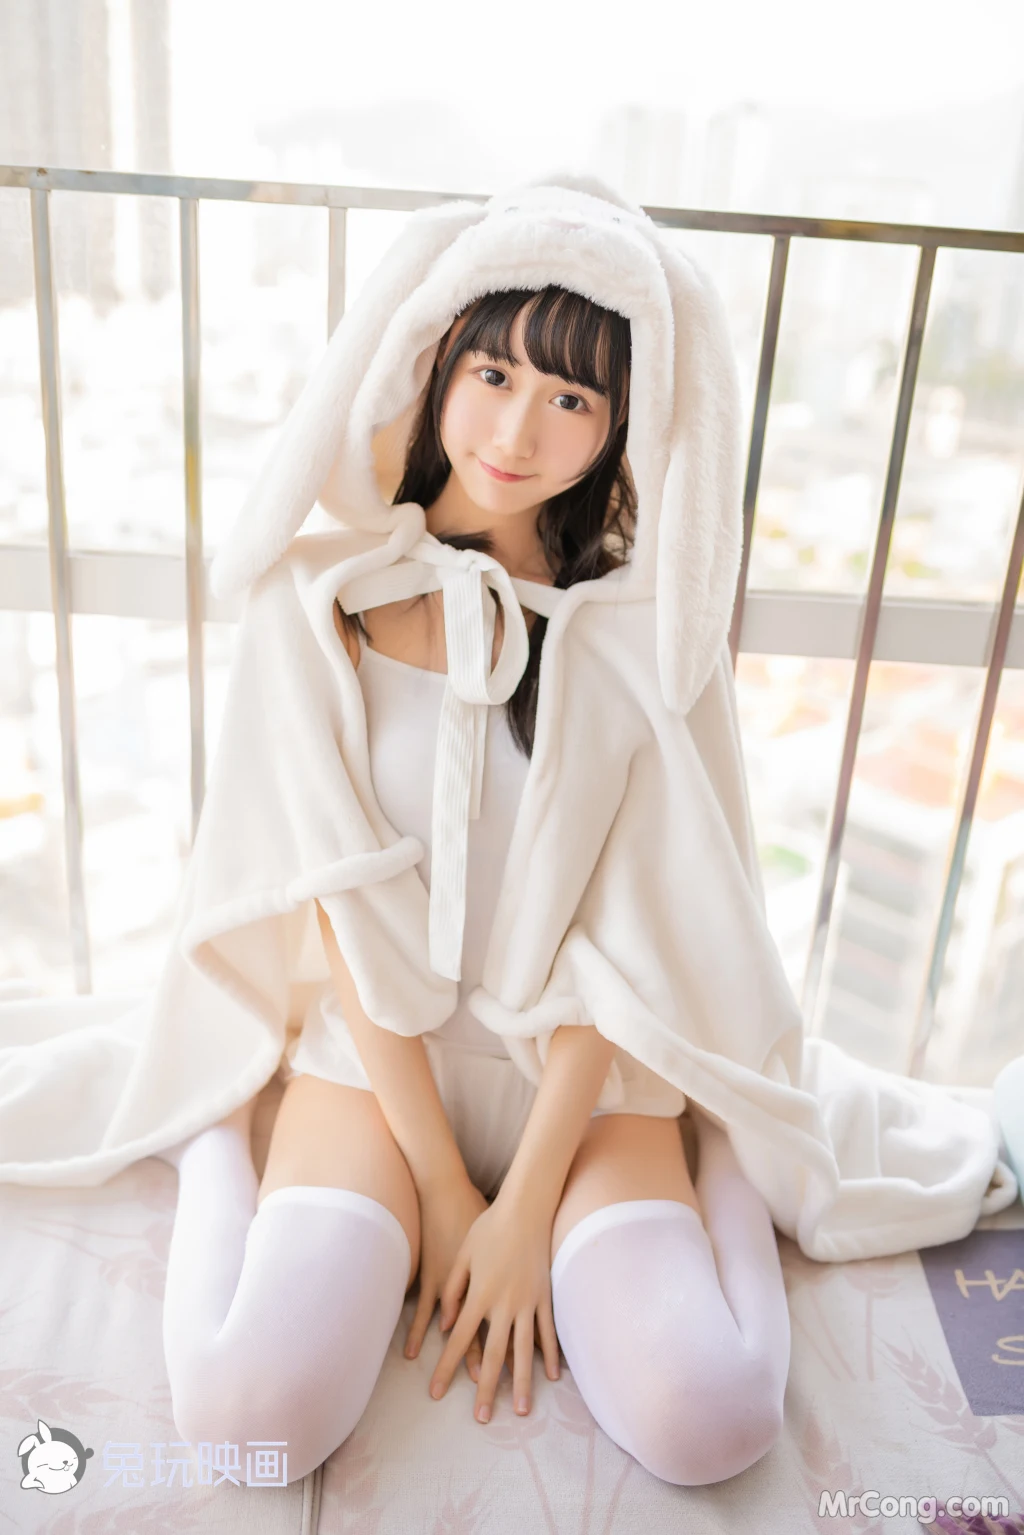 Cosplay@兔玩映画 Vol.035: 浴巾兔子 (42 photos) photo 1-17